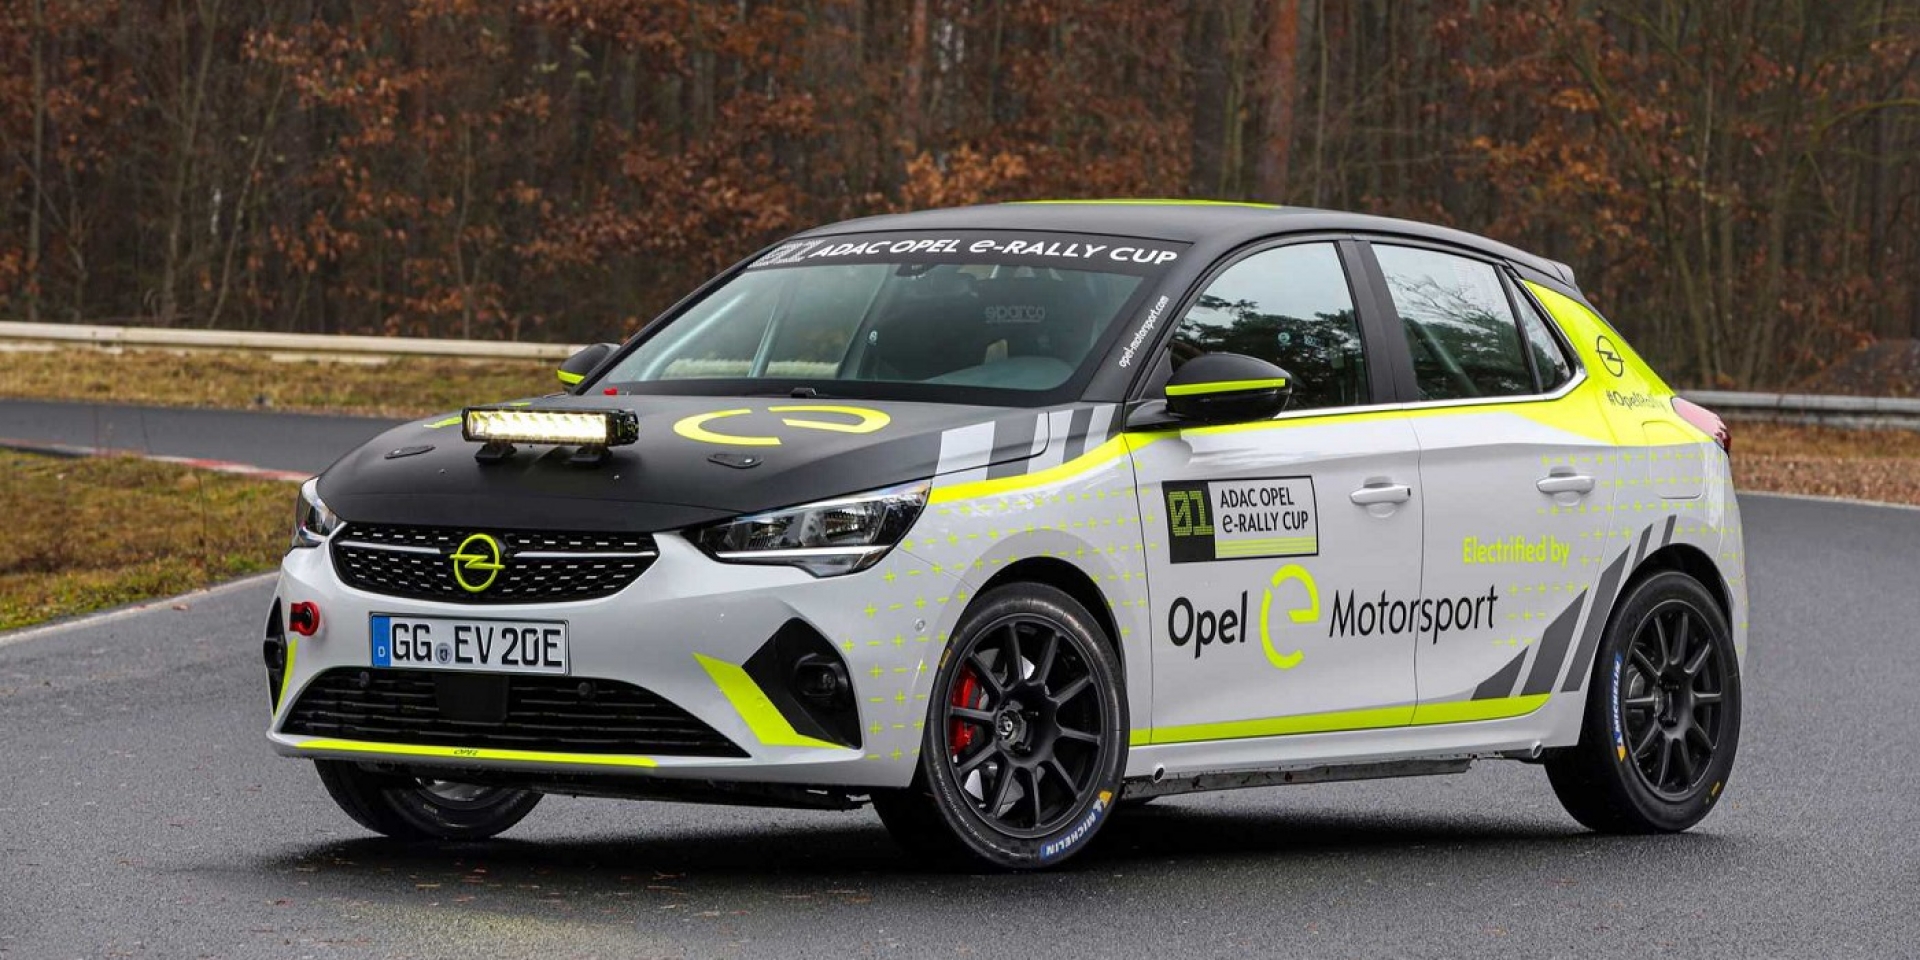 首款全電力拉力賽車Opel Corsa e-Rally Cup測試中